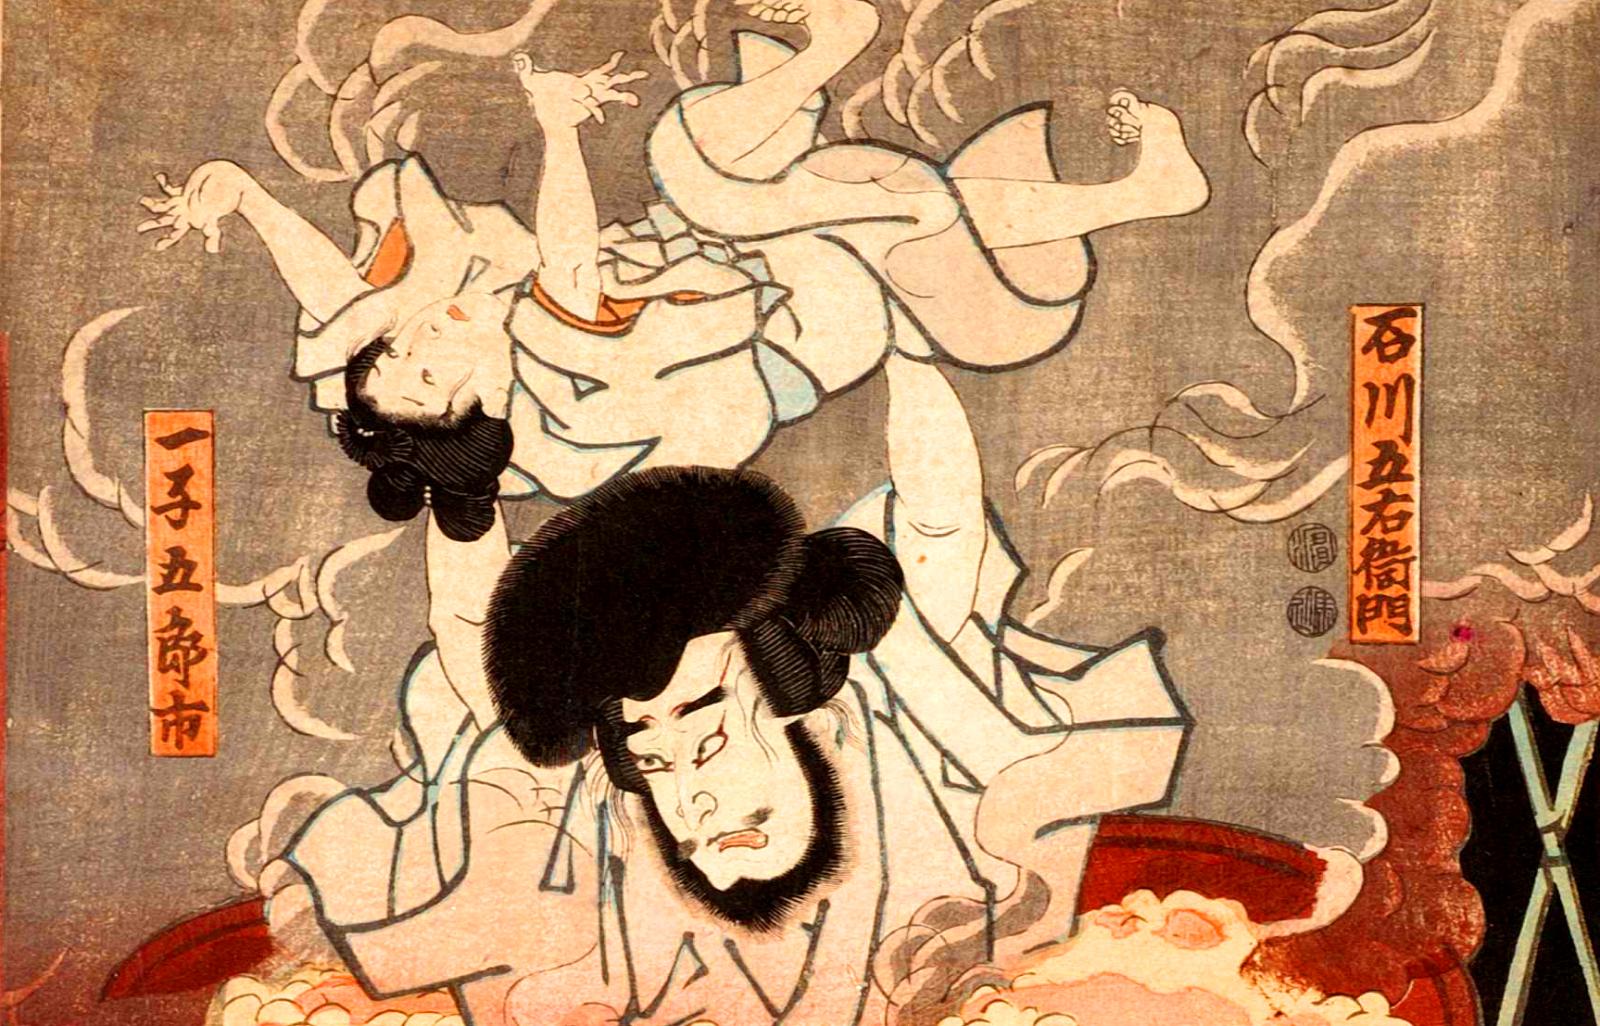 Казнь Исикавы Гоэмона, японская картина конца XIX века.